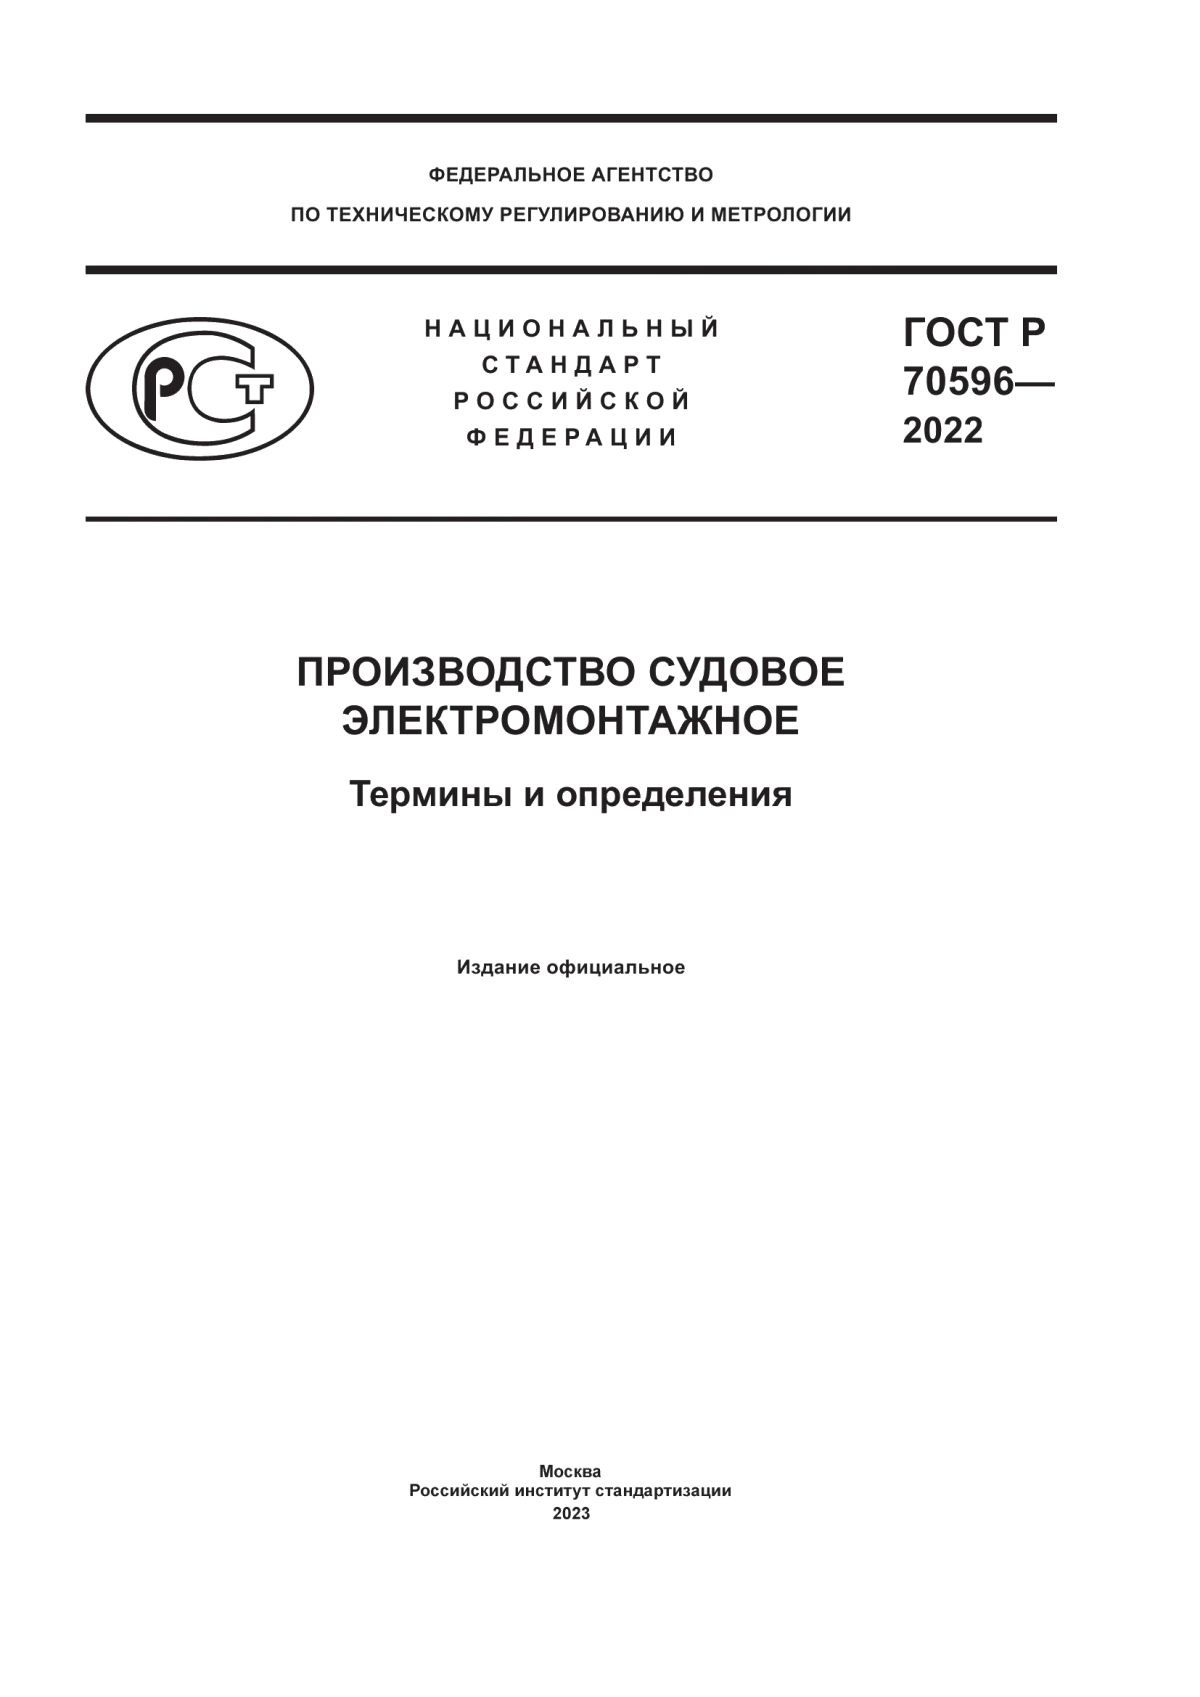 ГОСТ Р 70596-2022 Производство судовое электромонтажное. Термины и определения